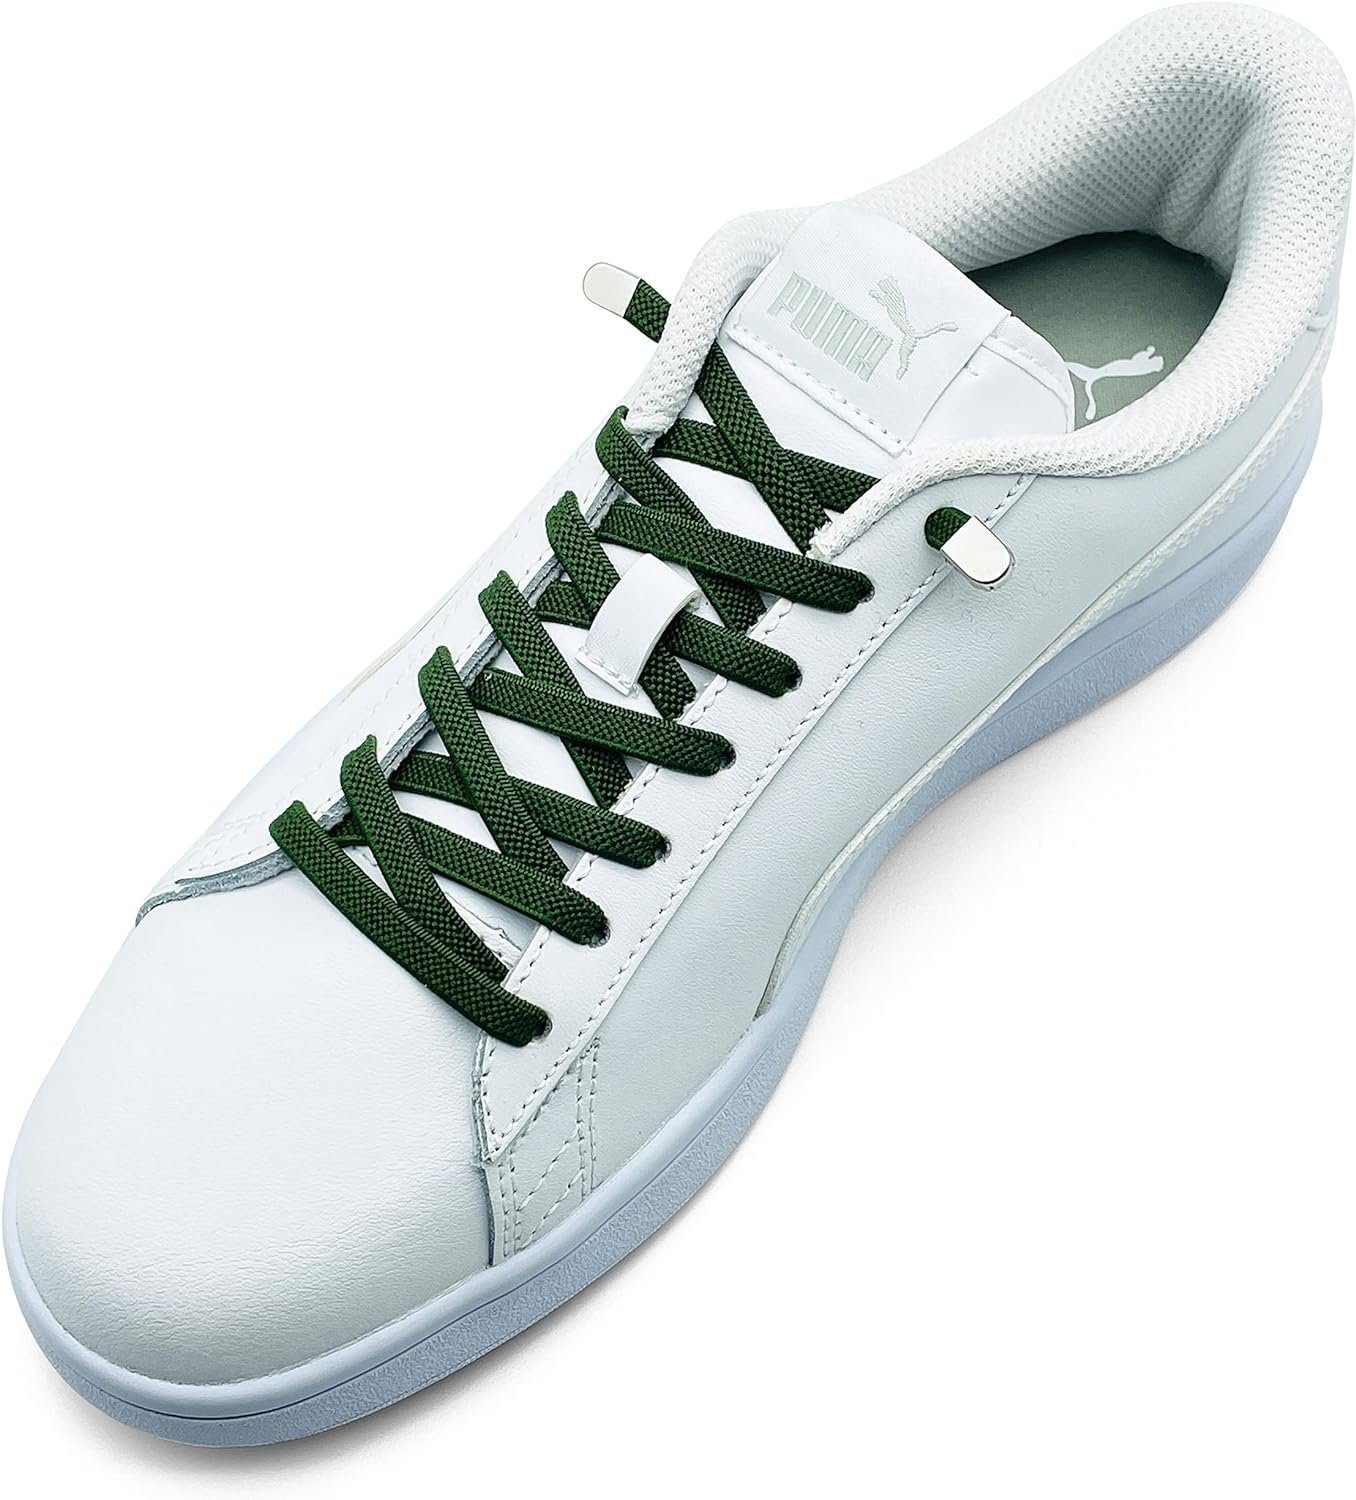 ELANOX Schnürsenkel 4 Stück für 2 Paar Schuhe elastische Schnürsenkel mit Clips, inkl. Enden (Clips) - 8 St. in silber army grün